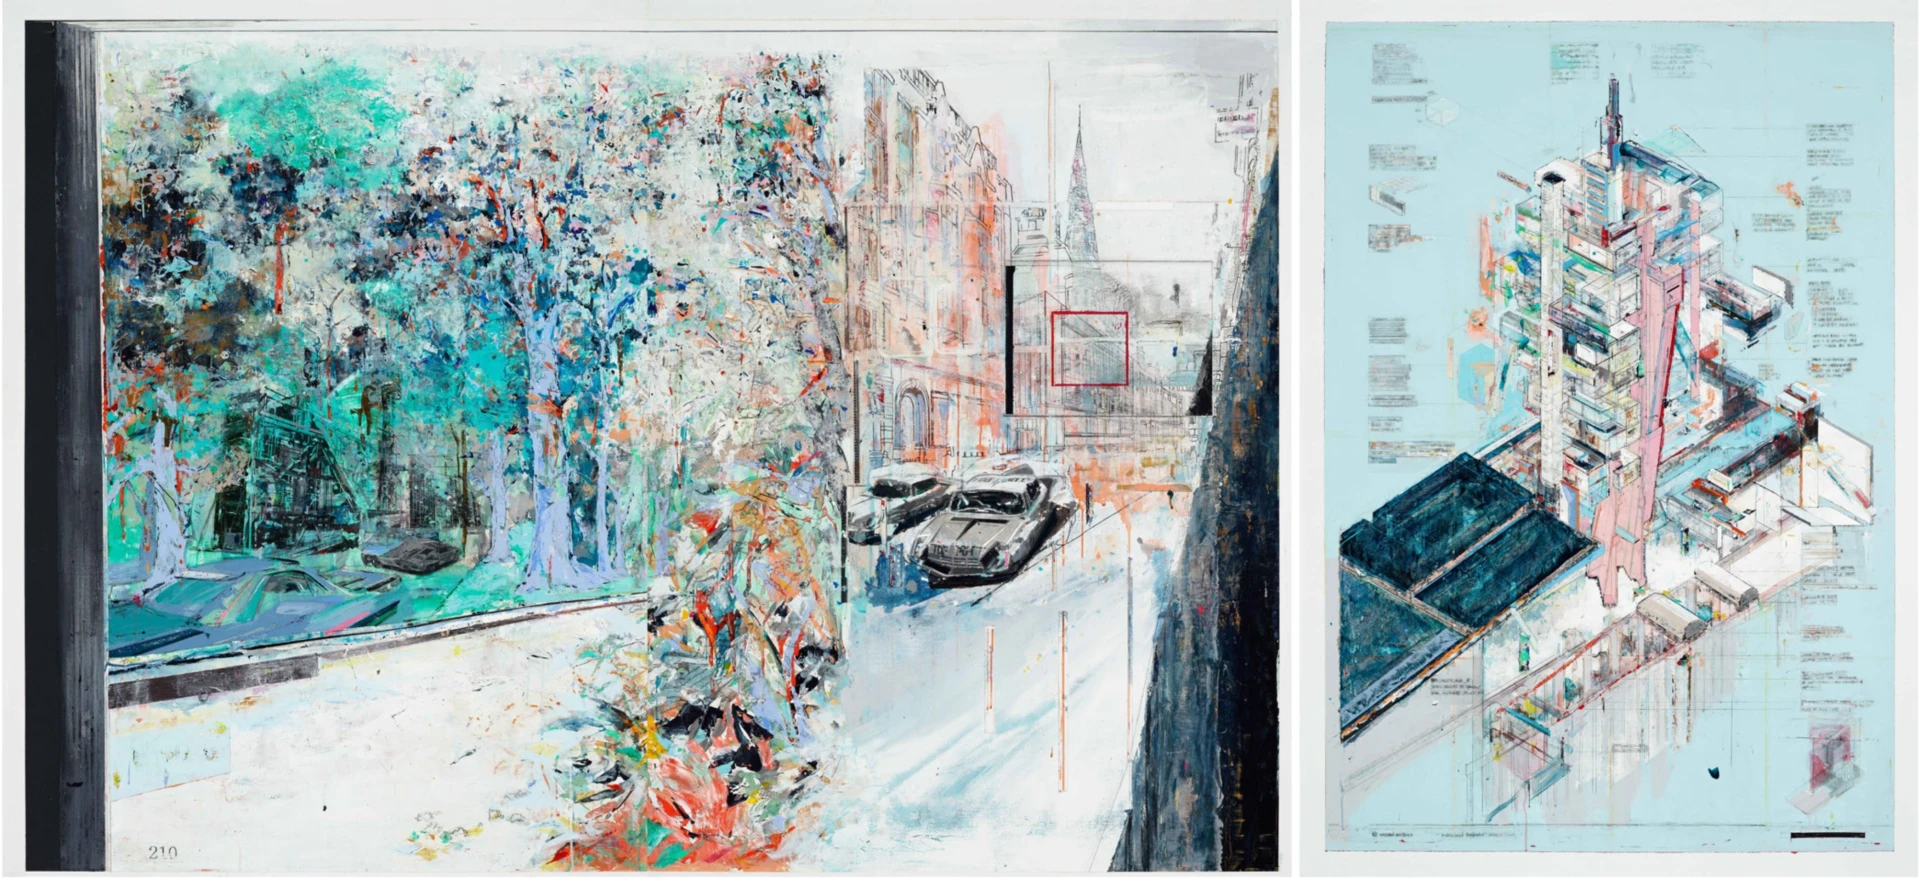 《Landscape 134》，2018，壓克力顏料、綜合媒材、畫布，170×362cm-圖片